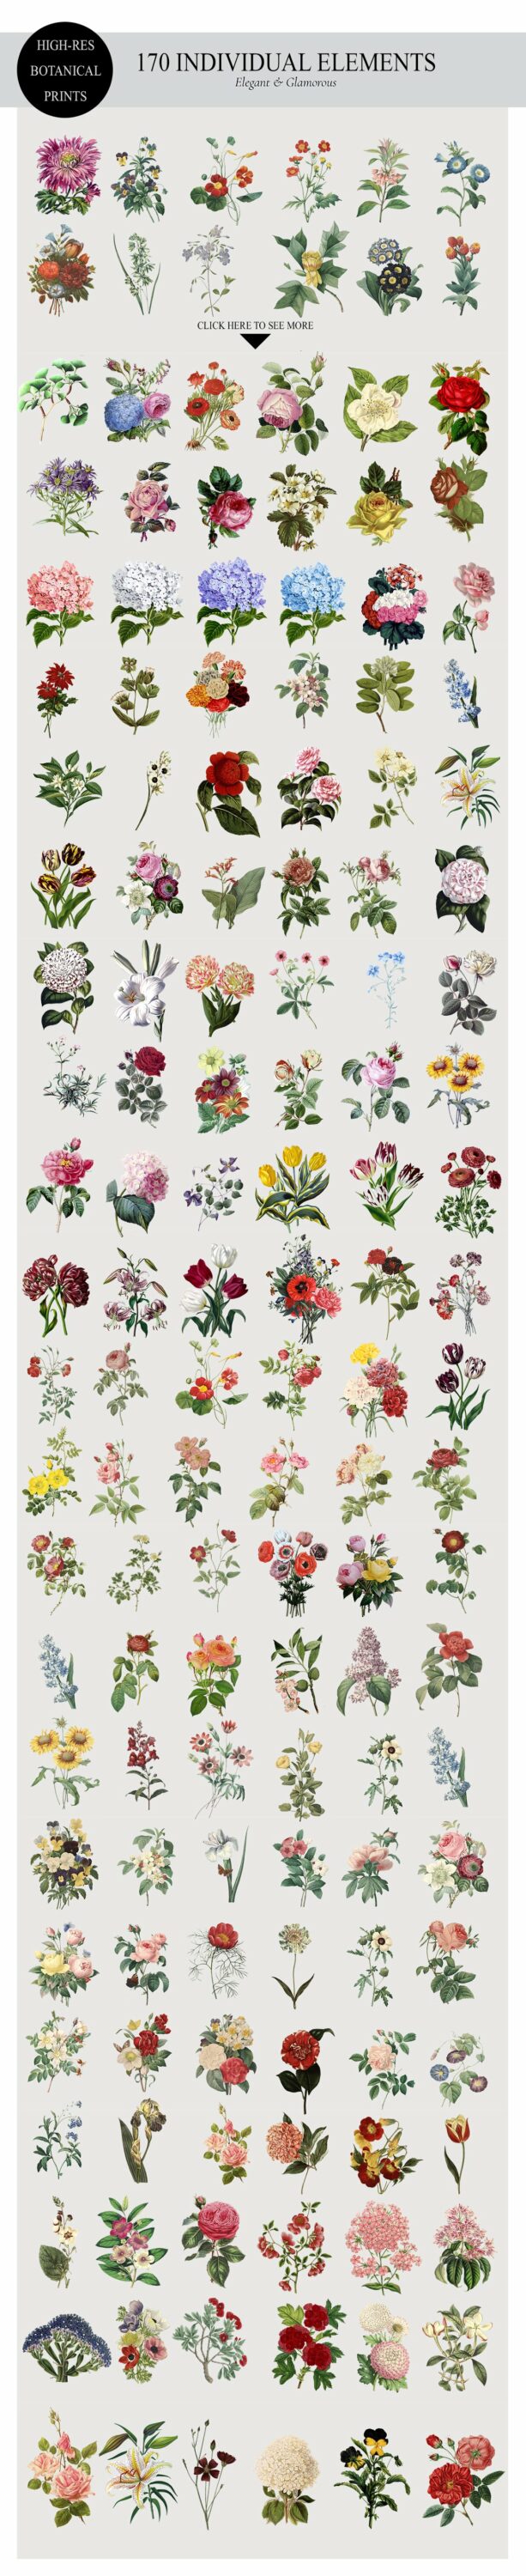 Print of many botanical image.